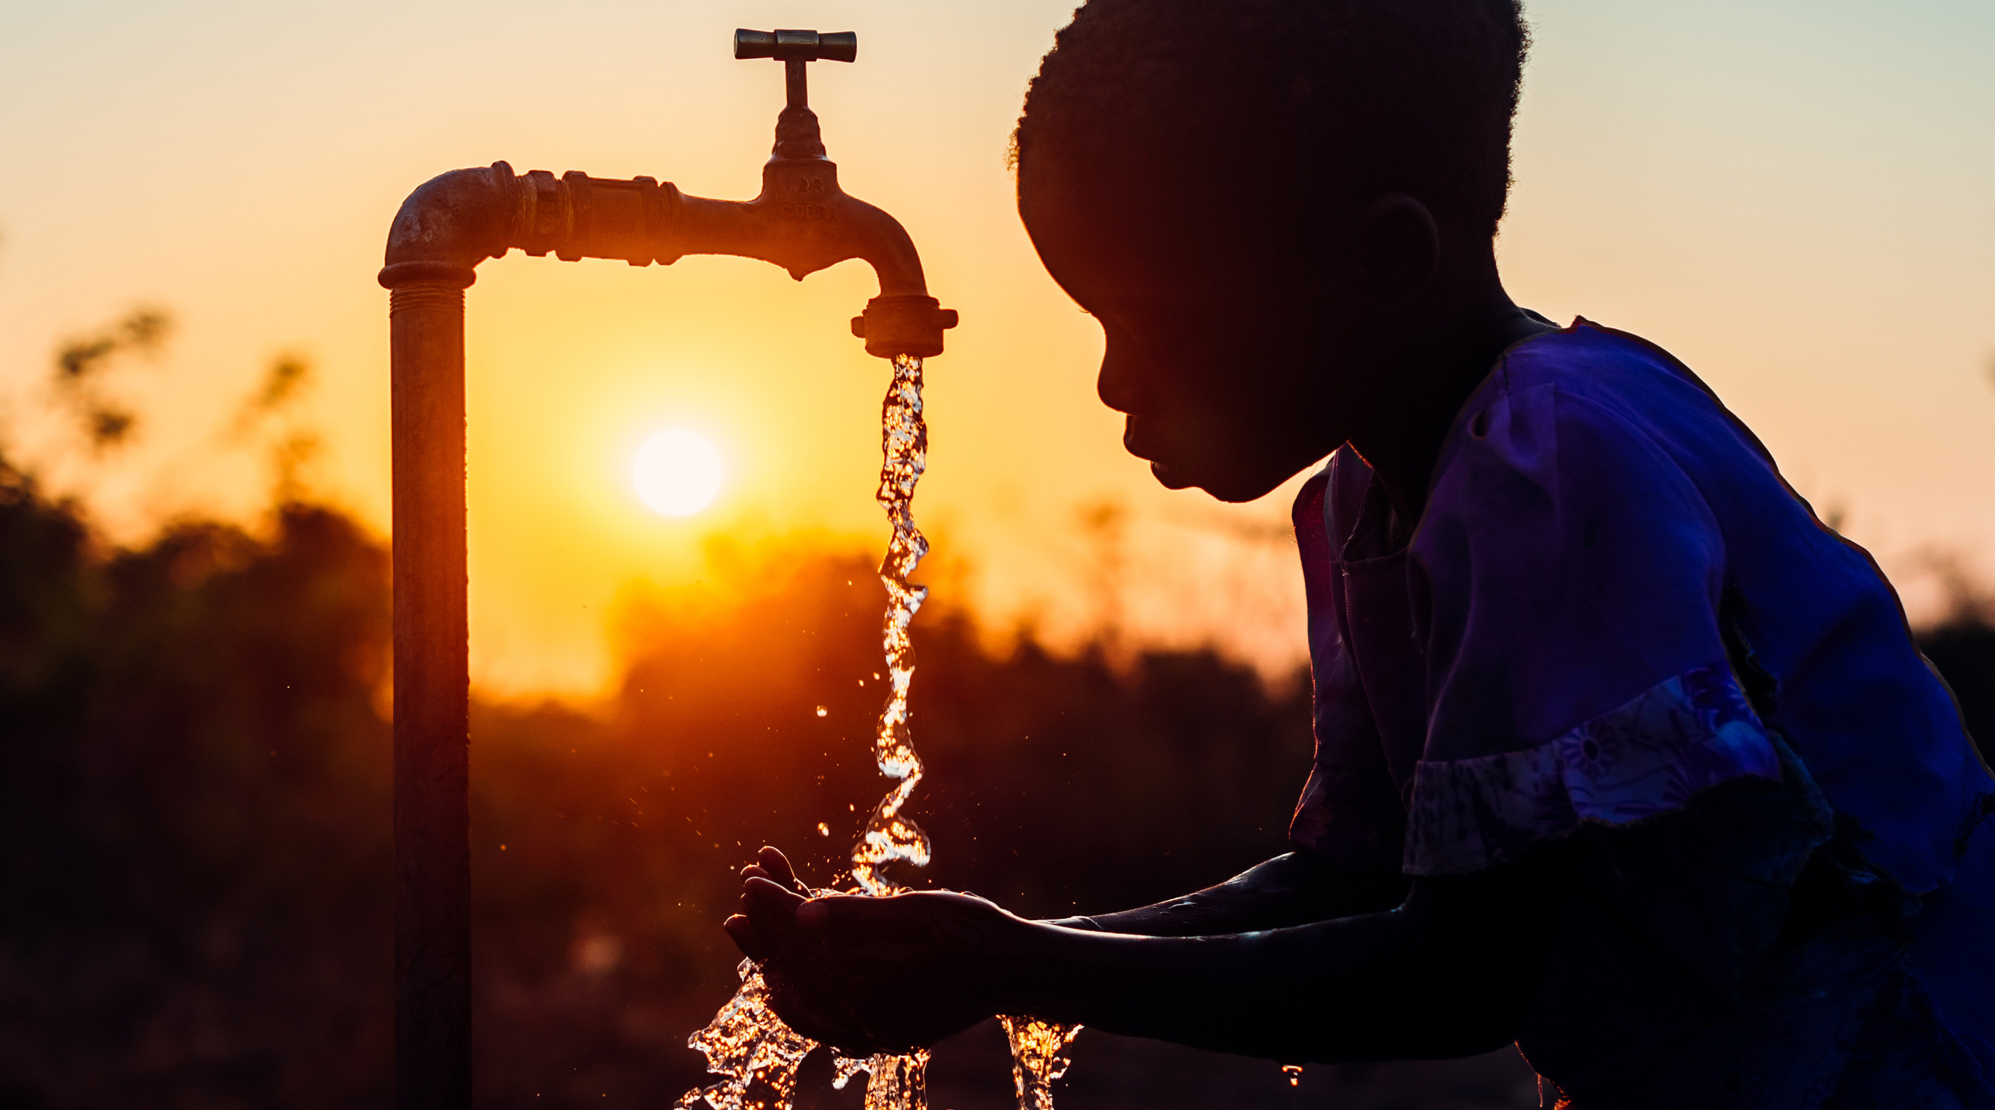 Sonnenaufgang an einer Wasserstelle in Sambia